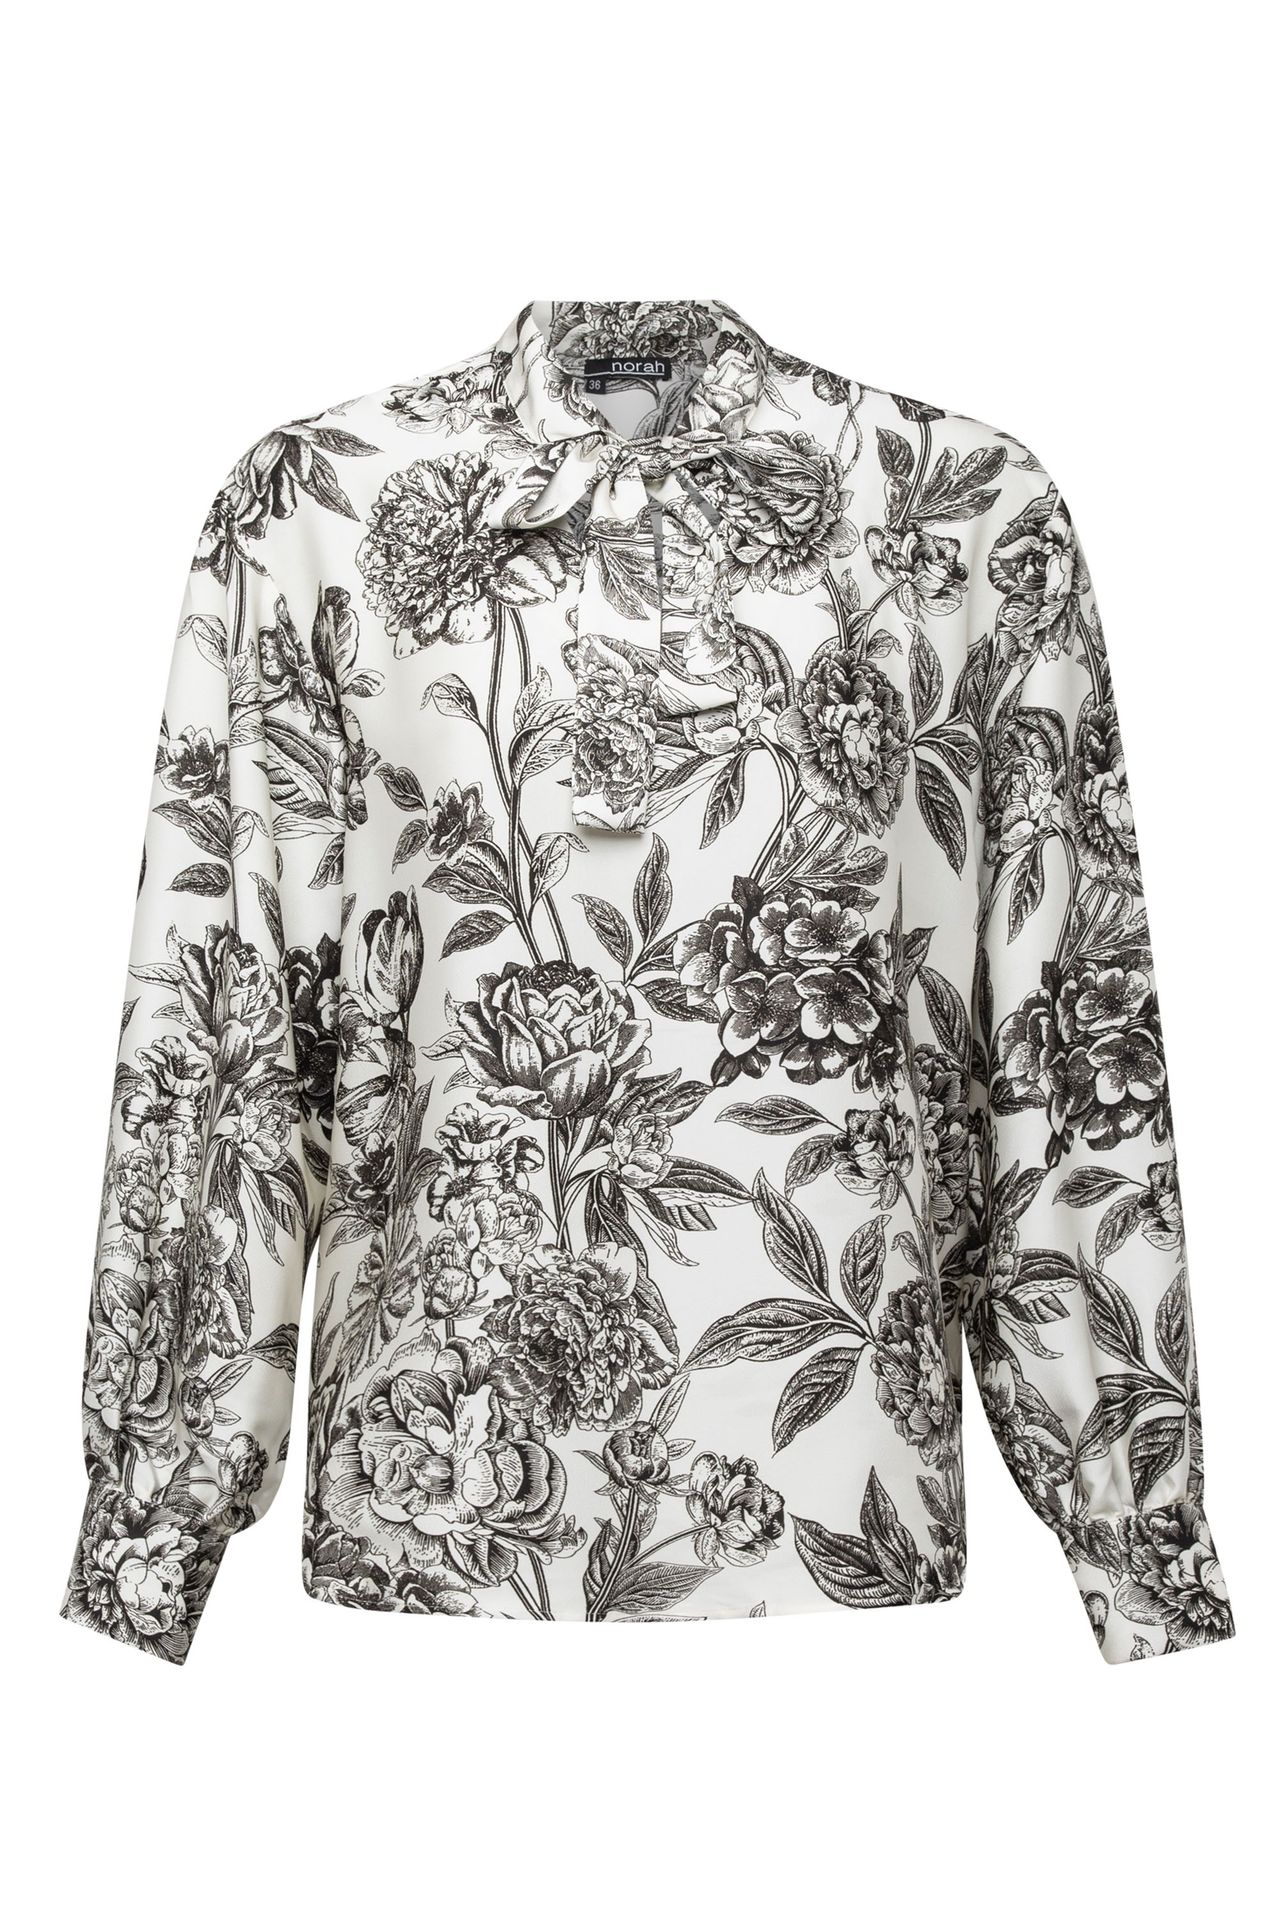 Norah Wit zwarte blouse met strikdetail white/black 214132-131